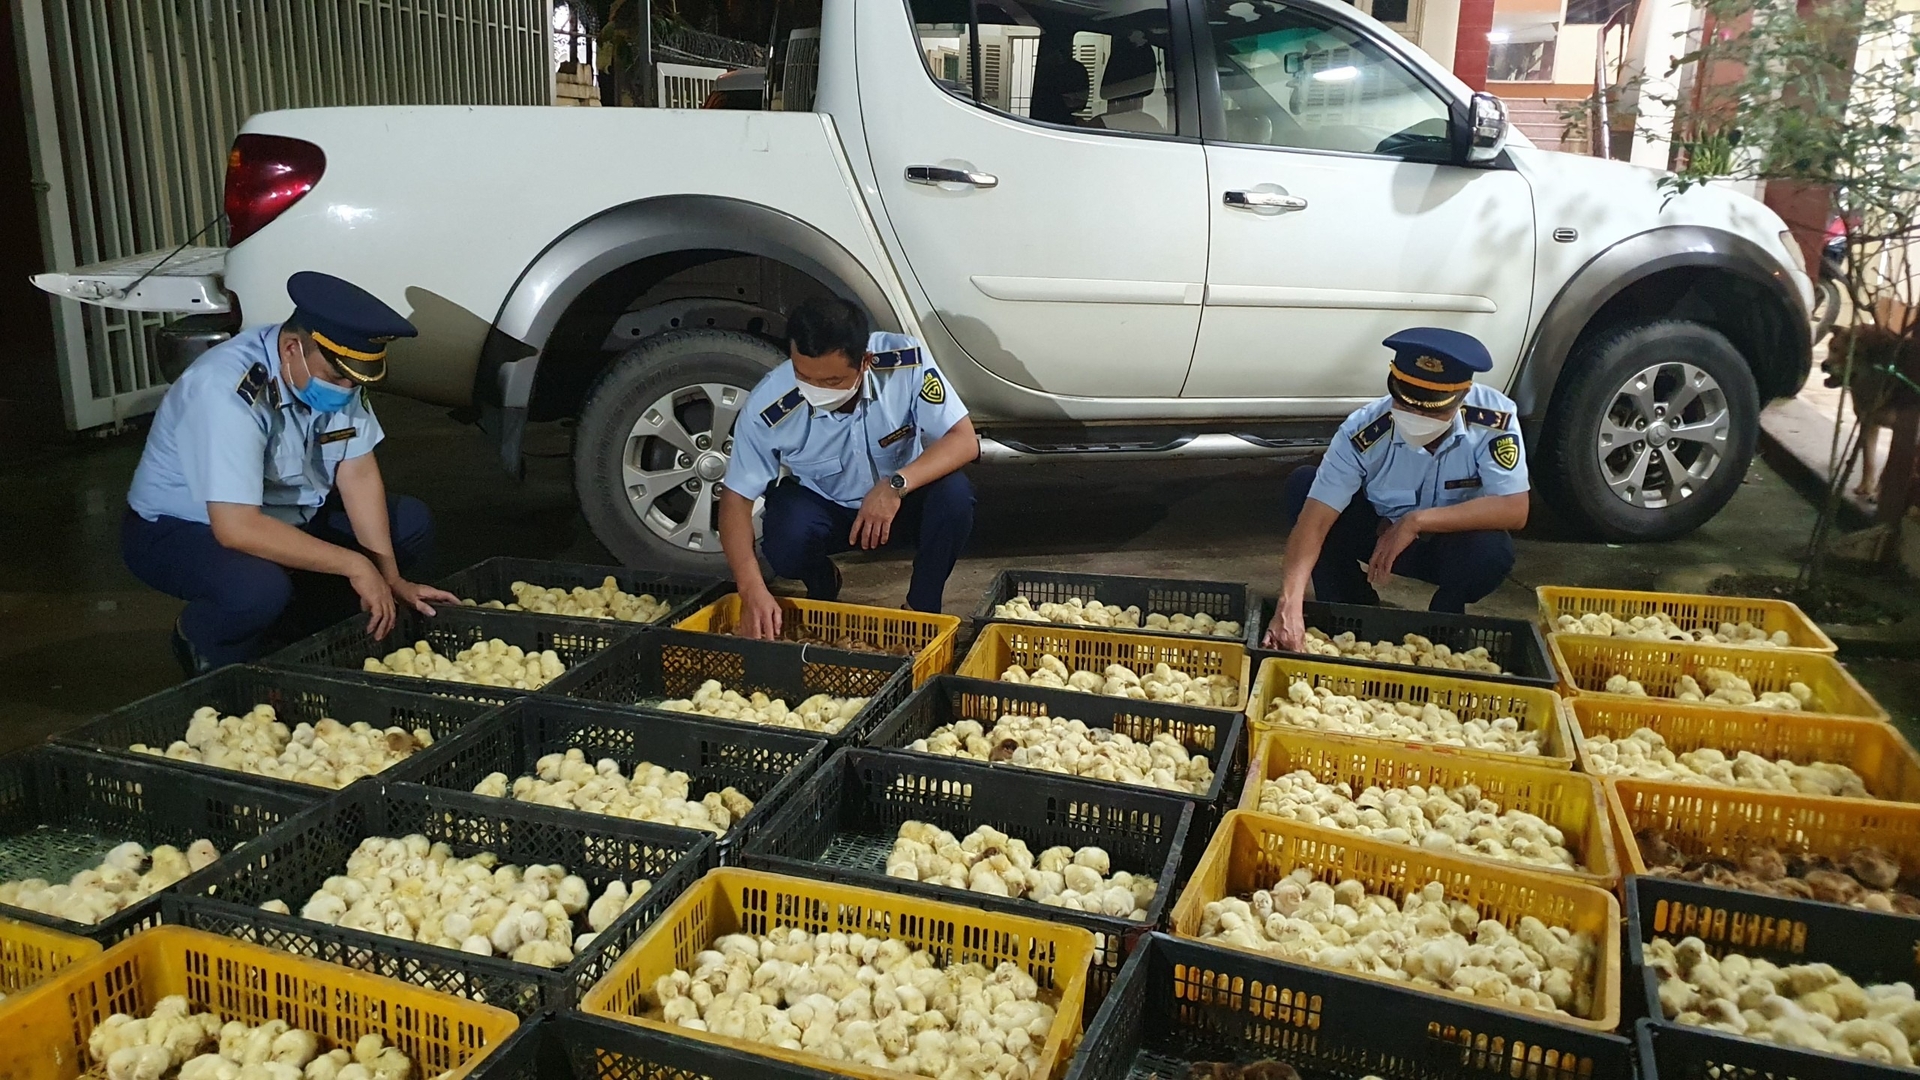 Cơ quan quản lý thị trường tỉnh Lạng Sơn bắt giữ 7 vụ vận chuyển, hơn 37.000 con giống gia cầm nhập lậu qua khu vực cửa khẩu Chi Ma, huyện Lộc Bình. Ảnh: QLTT.